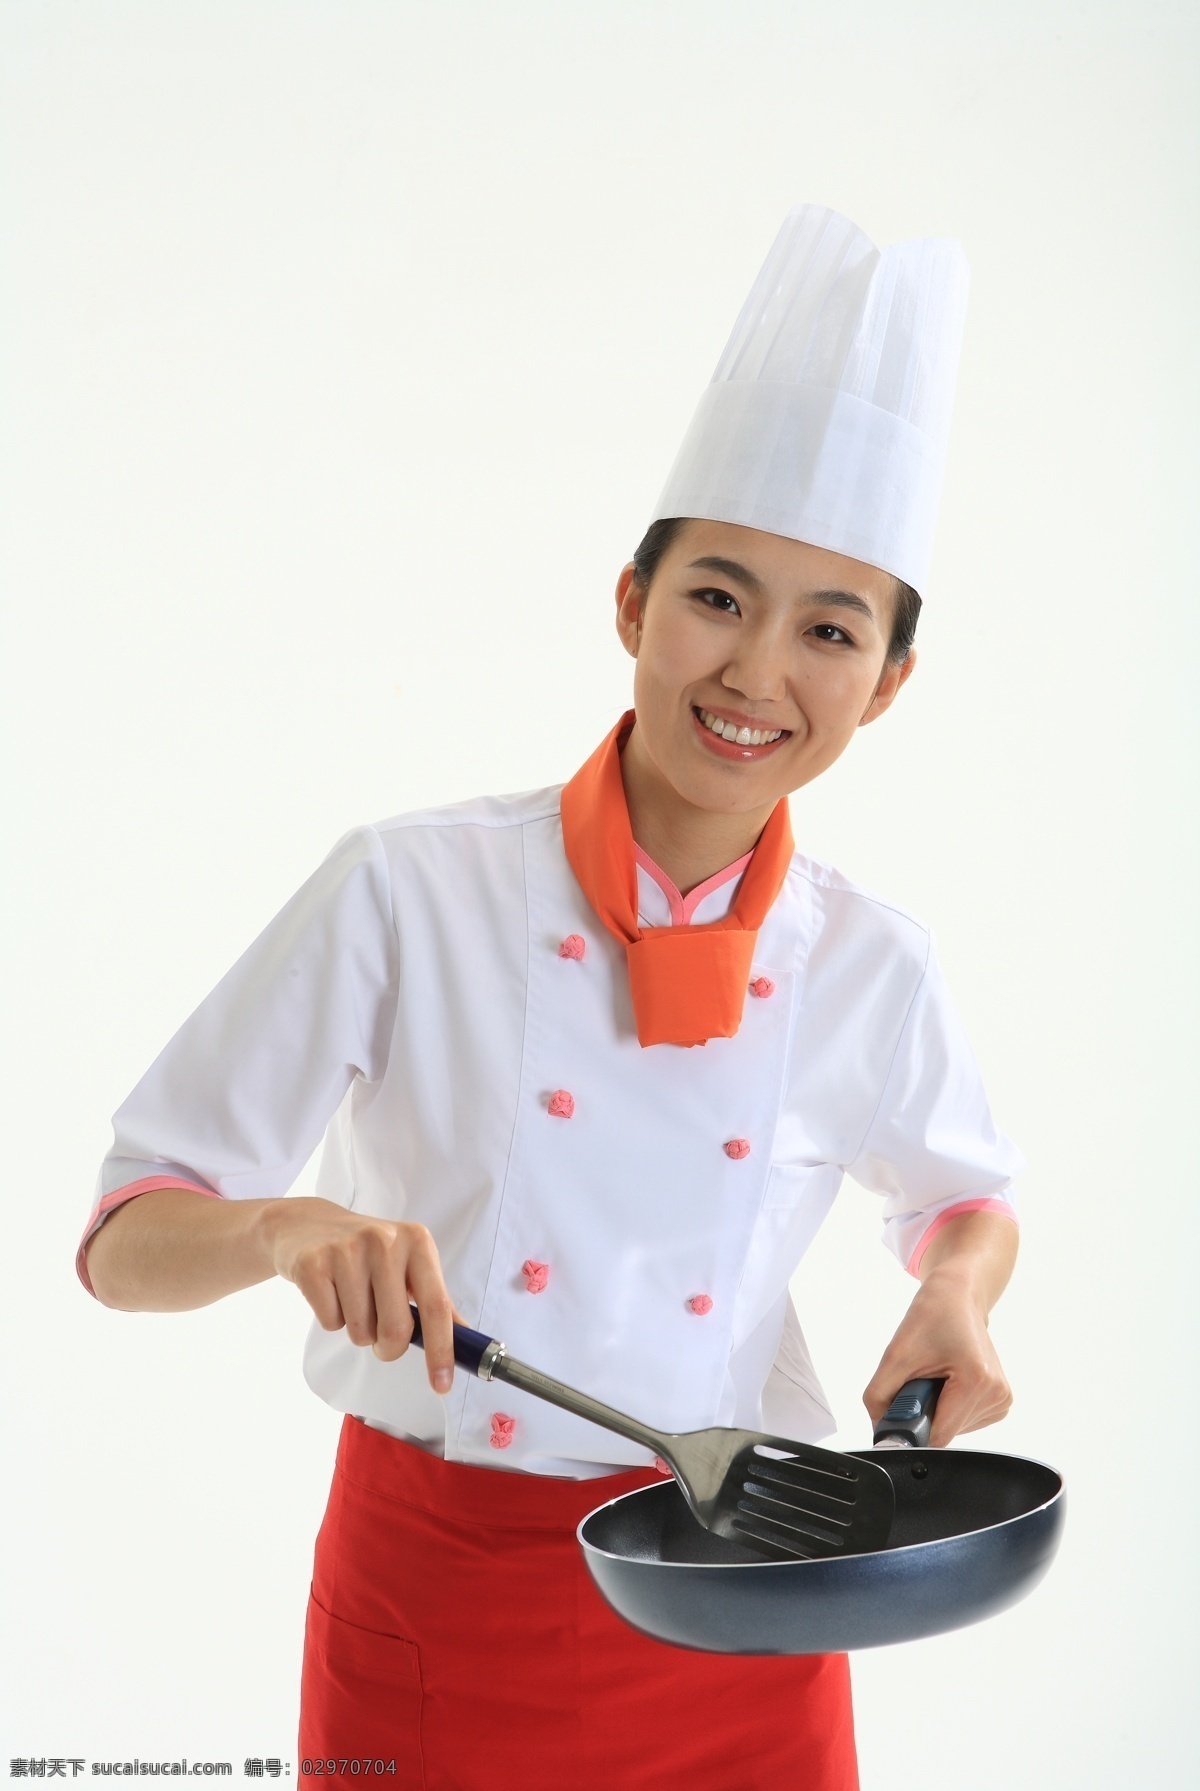 厨师 女厨师 美女厨师 厨师帽 职业厨师 厨师摄影 人物图库 职业人物